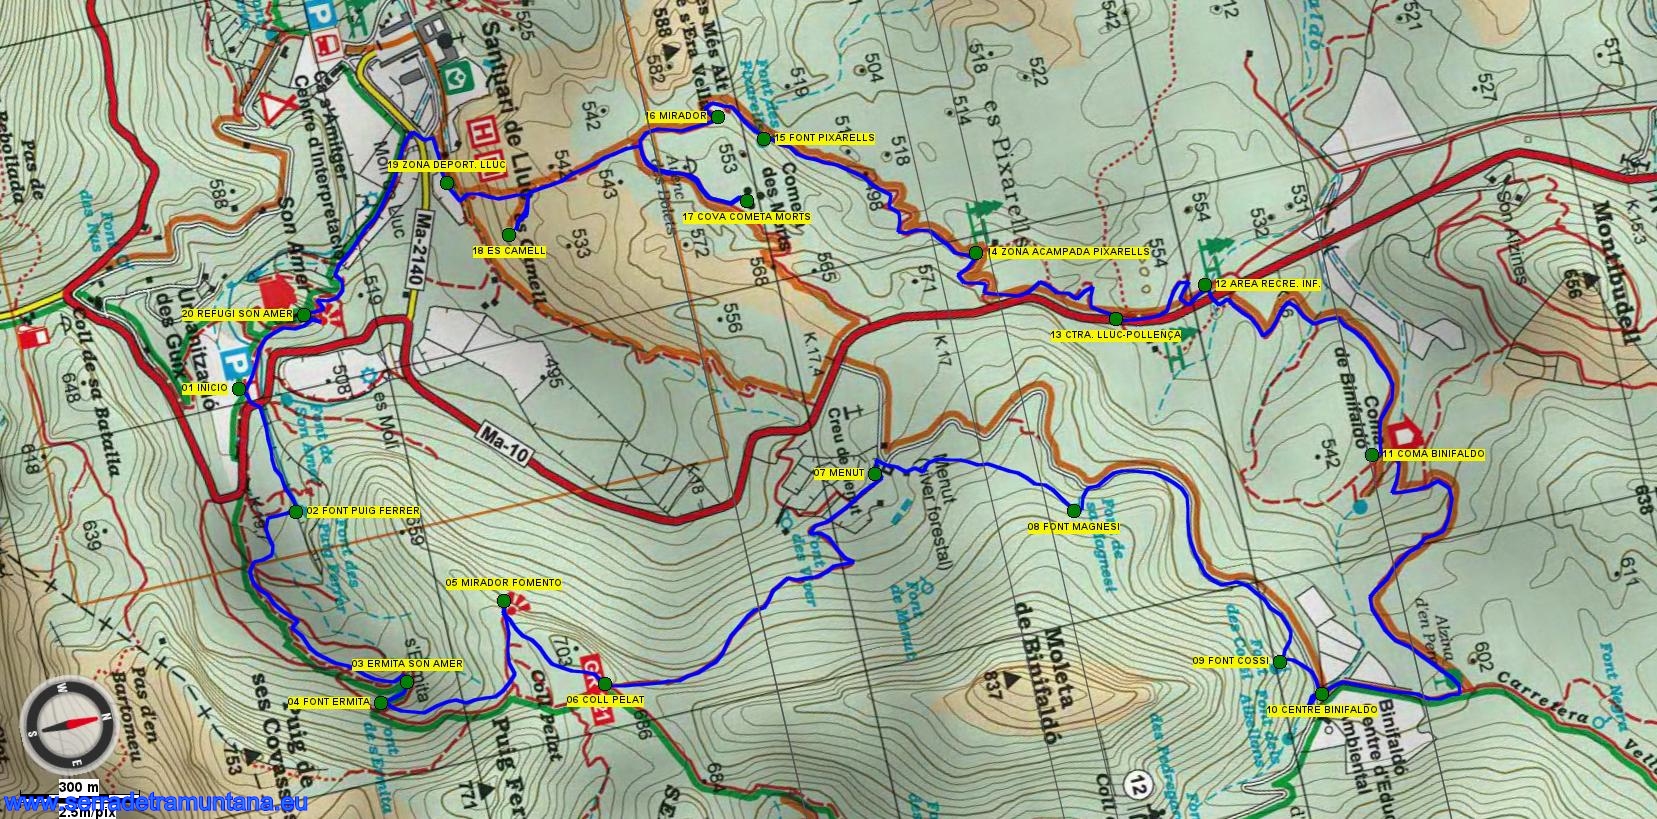 Recorte del mapa de Alpina con la ruta de las fuentes, la del sábado